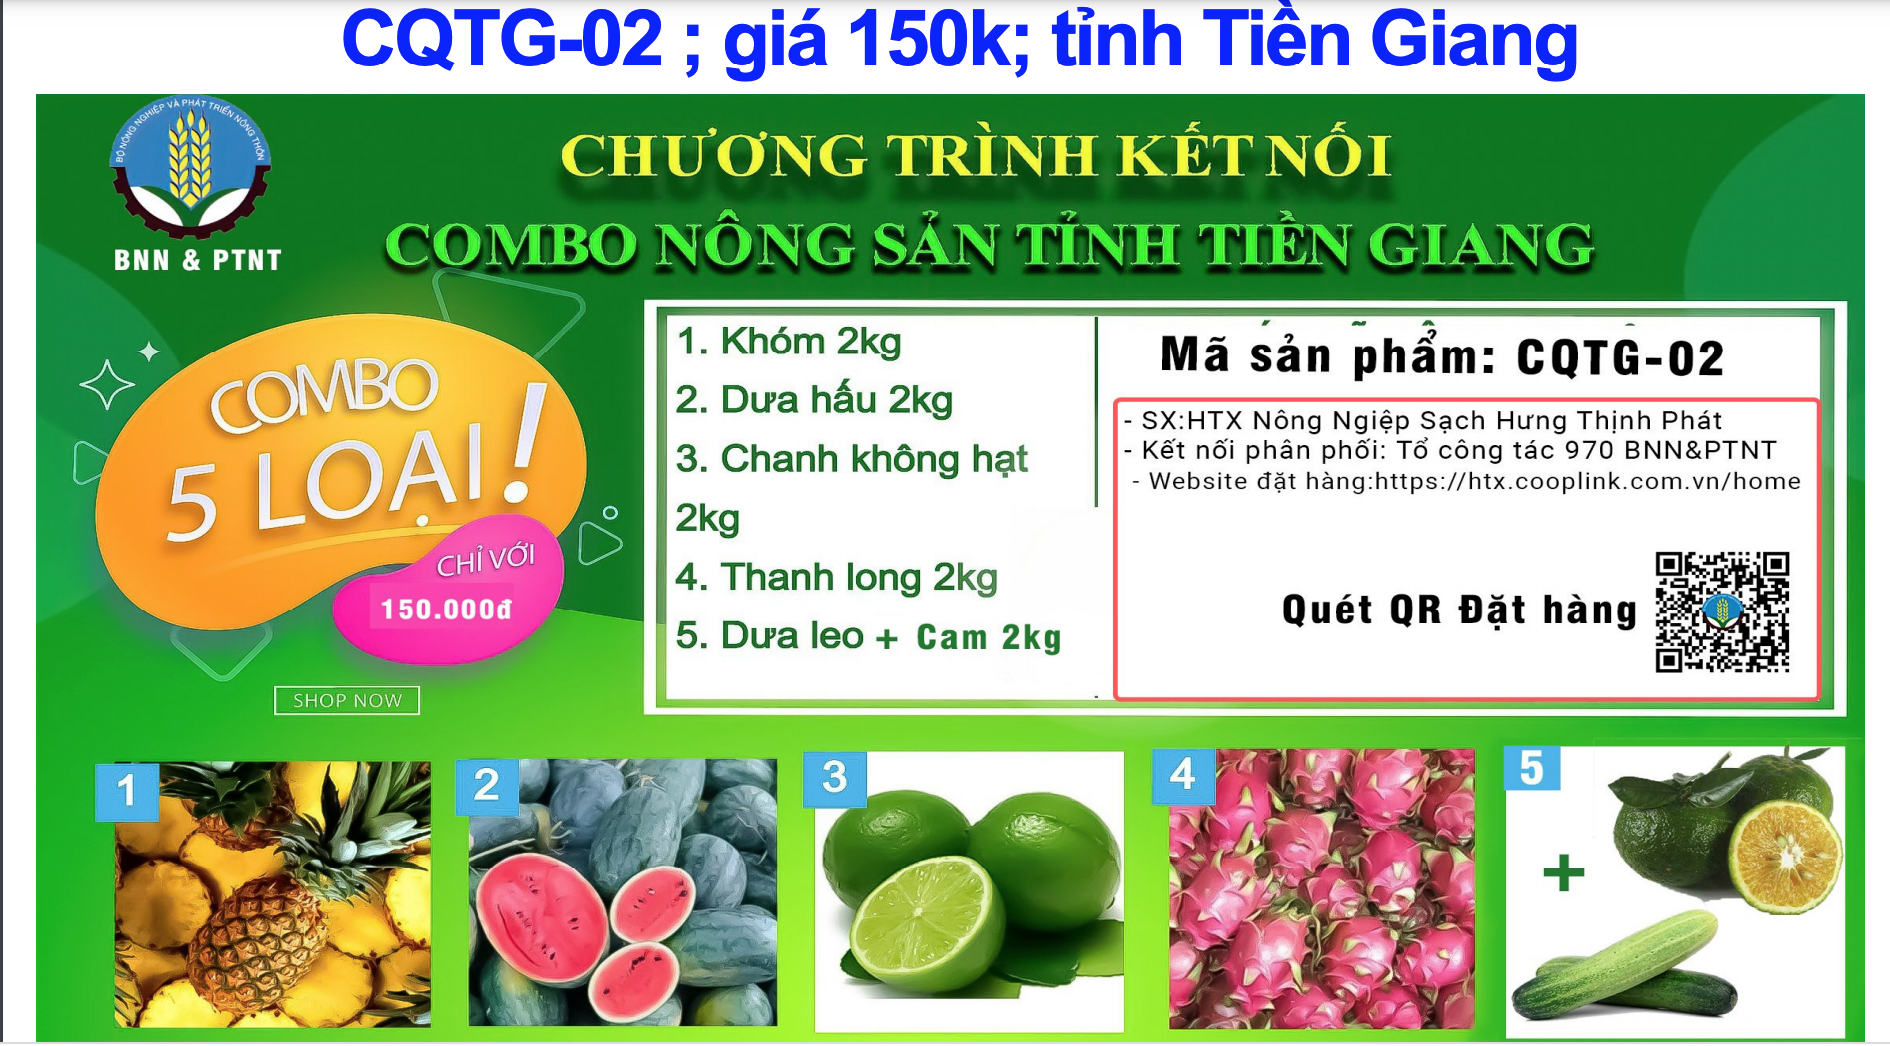 Combo 150.000 đồng từ tỉnh Tiền Giang gồm: 2kg trái khóm, 2kg dưa hấu, 2kg chanh không hạt, 2kg thanh long, 2kg cam + dưa leo.